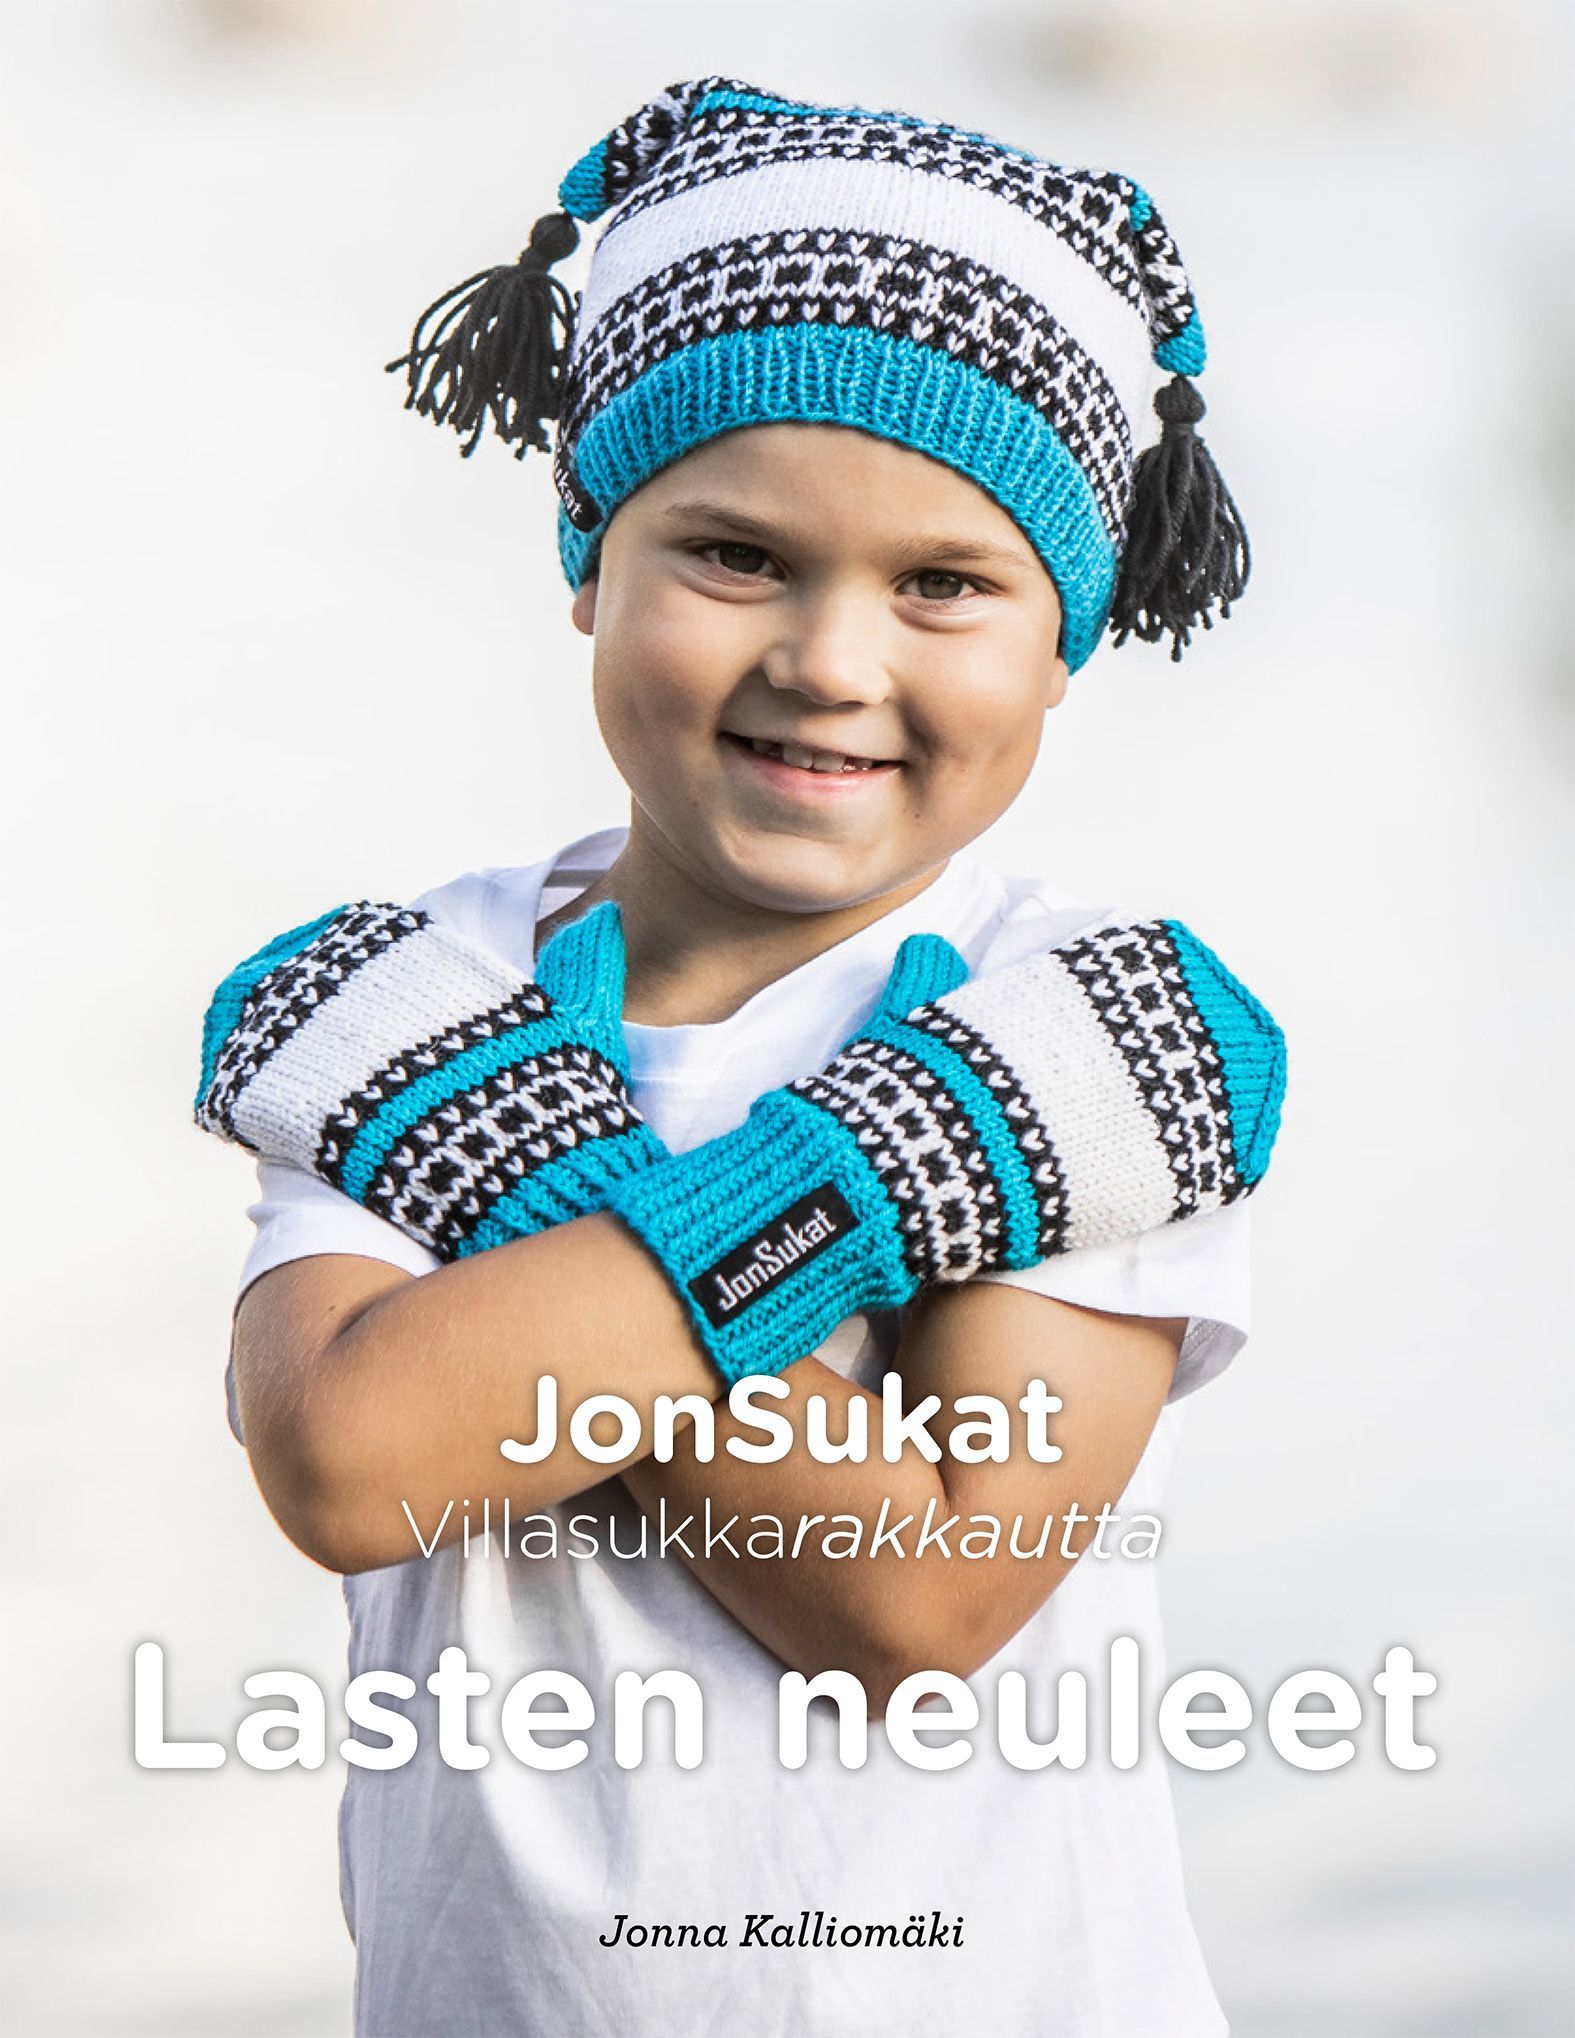 Jonna Kalliomäki : Villasukkarakkautta - Jonsukat - Lasten neuleet